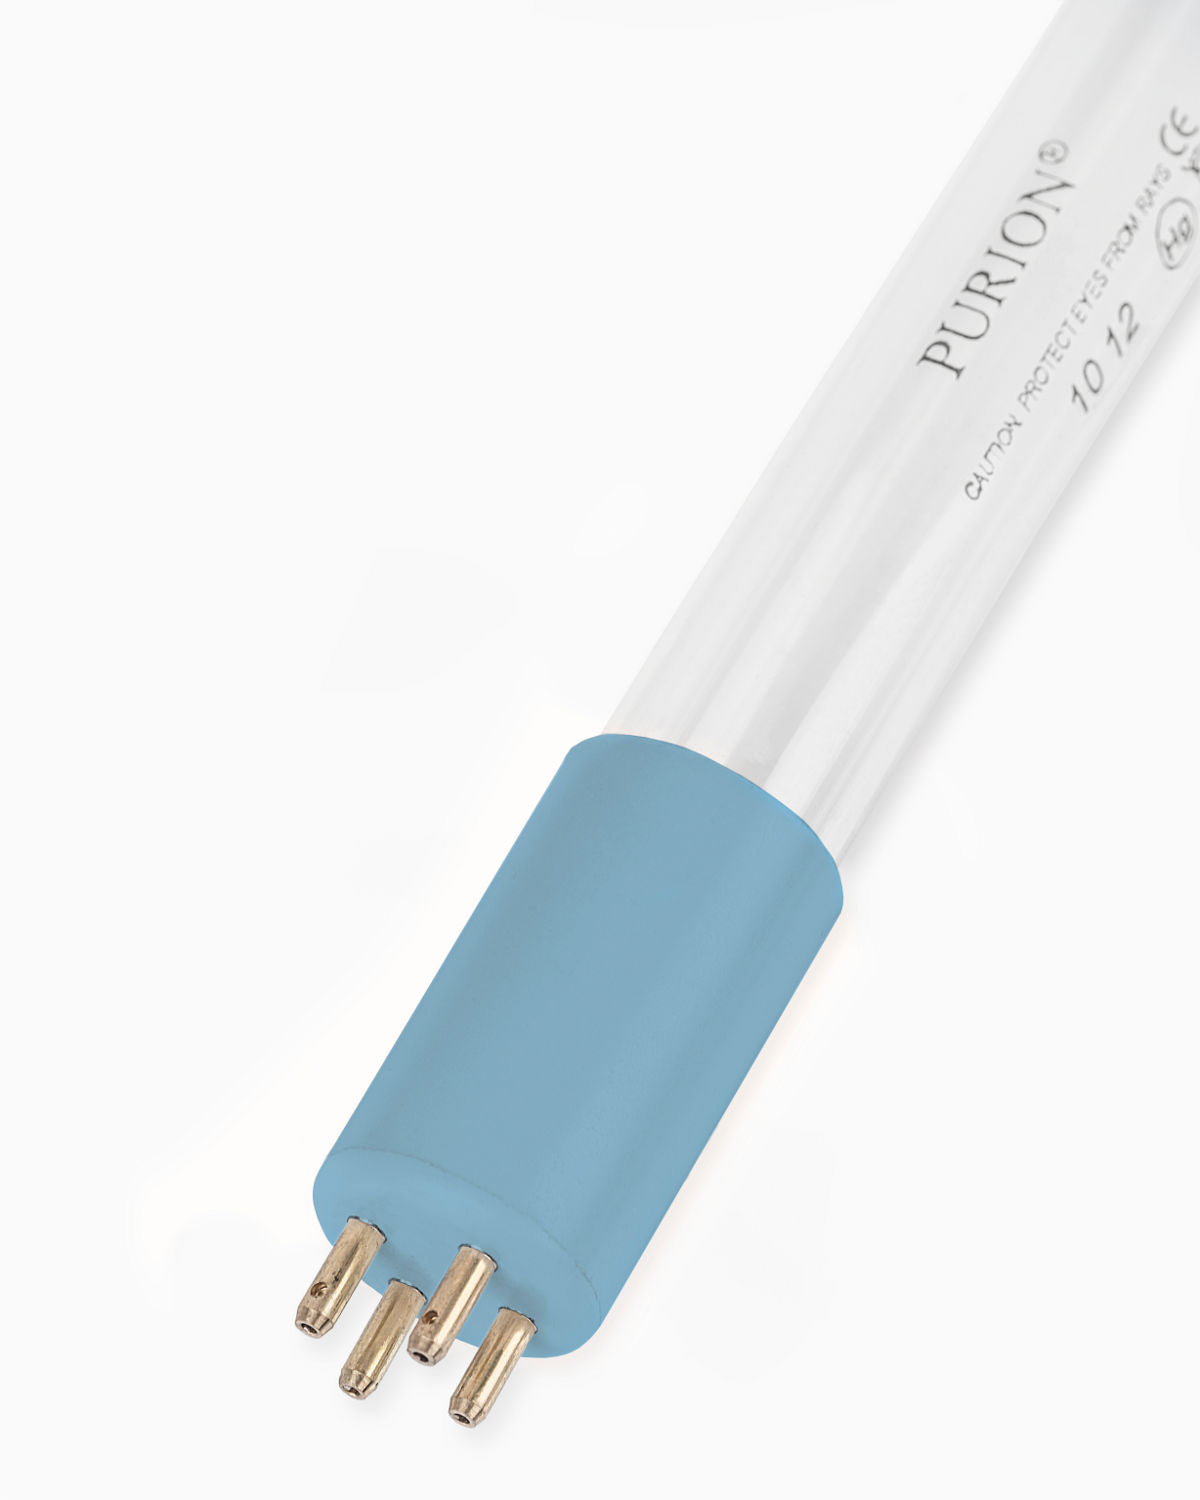 Eine blaue Lichtröhre auf weißem Hintergrund, die zu Desinfektionszwecken verwendet wird. Laut Herstellerangaben sollte das UV-C-Licht im PURION 1000 PRO OTC Plus der PURION GmbH danach ausgetauscht werden.